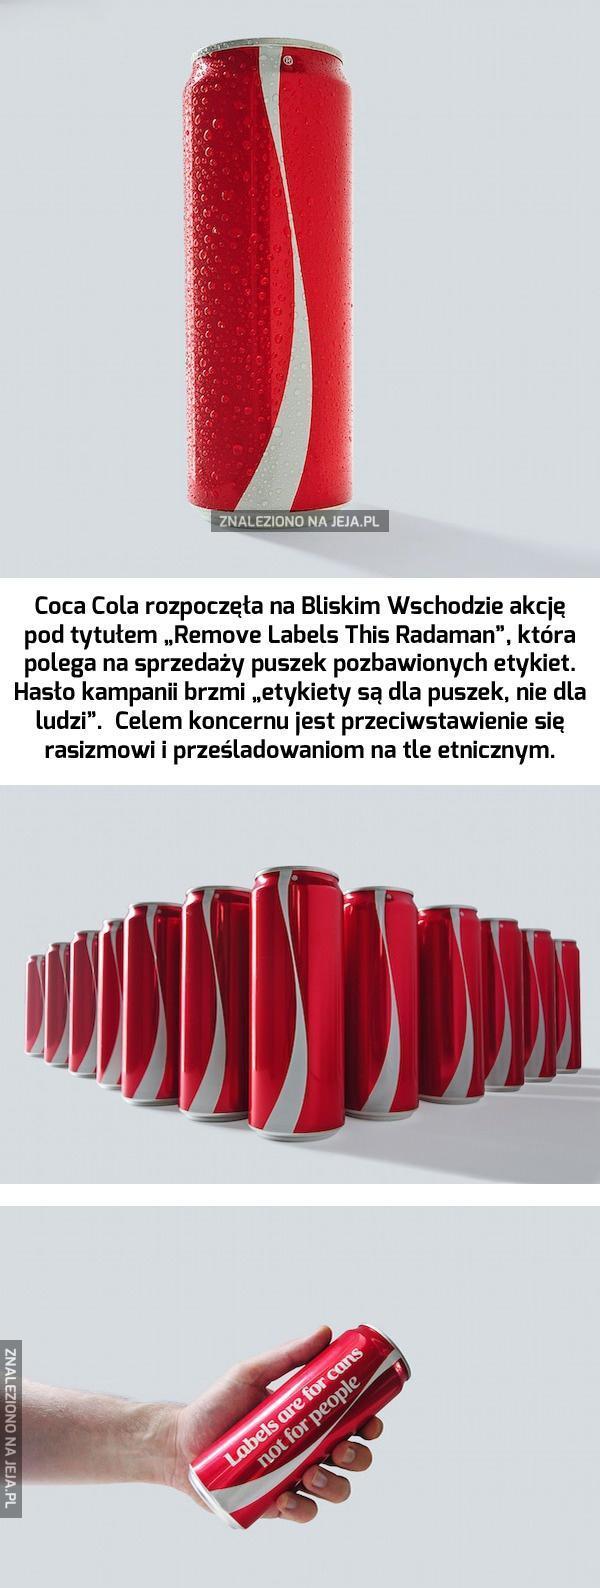 Ciekawa akcja Coca Coli